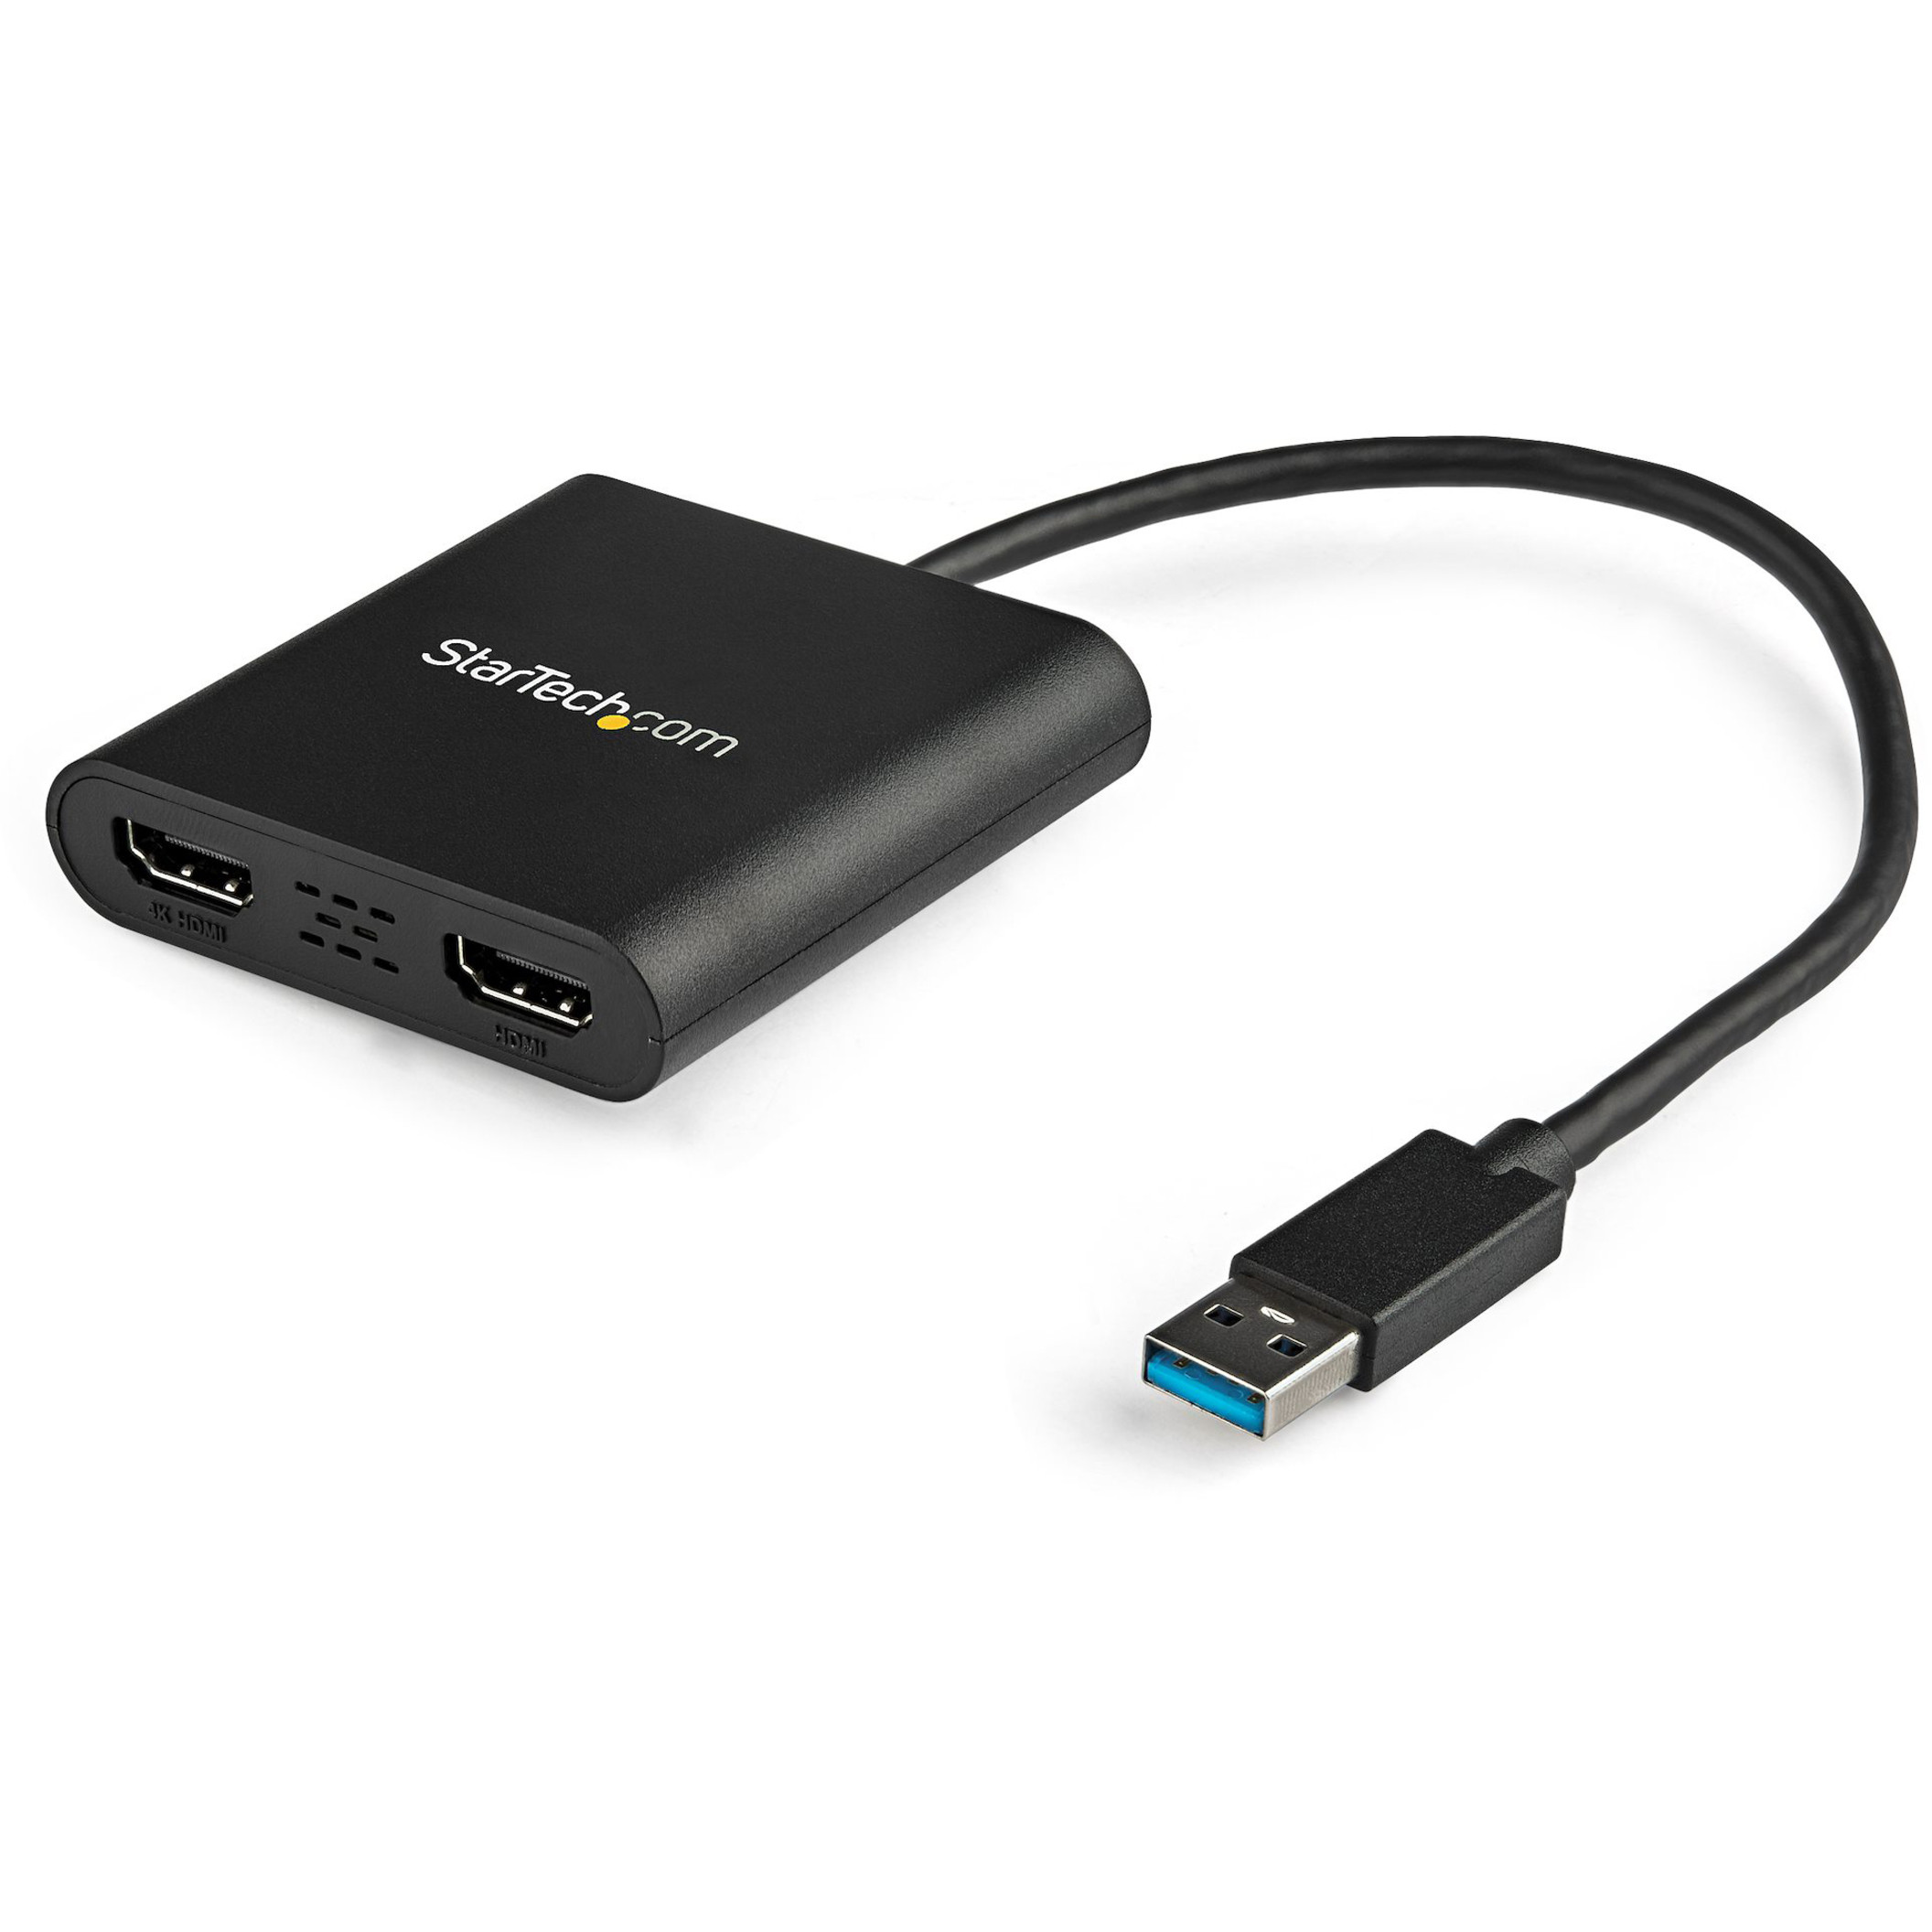  StarTech.com USB 3.0 to HDMI Adapter - 1080p